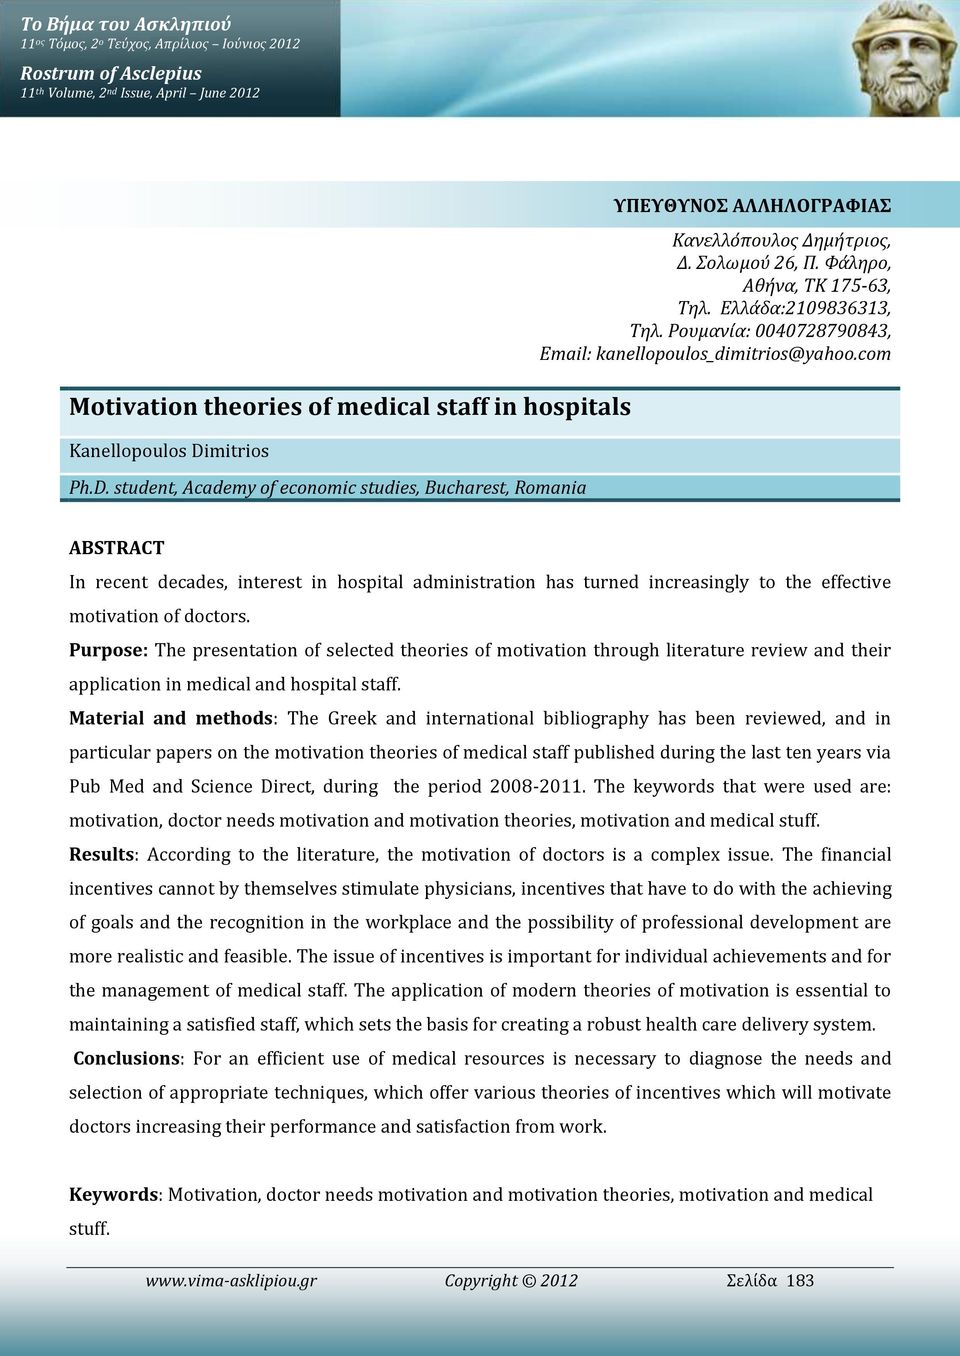 Ρουμανία: 0040728790843, Email: kanellopoulos_dimitrios@yahoo.com ABSTRACT In recent decades, interest in hospital administration has turned increasingly to the effective motivation of doctors.